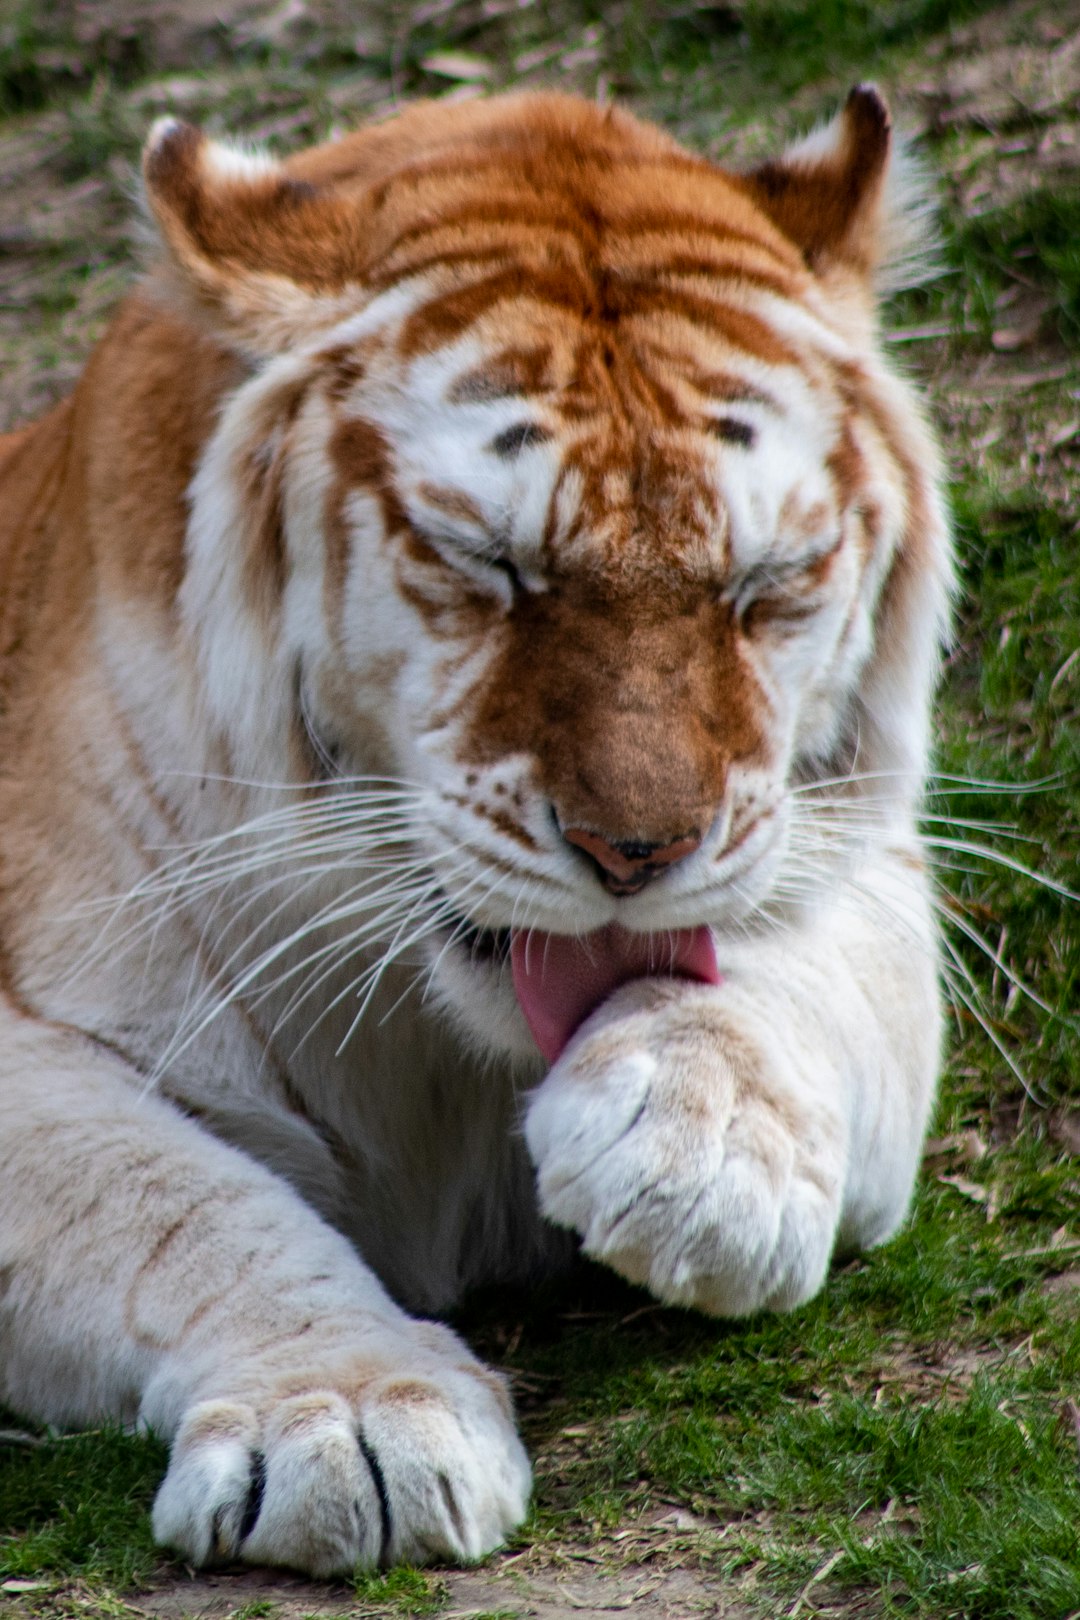 A tiger licks its paw.